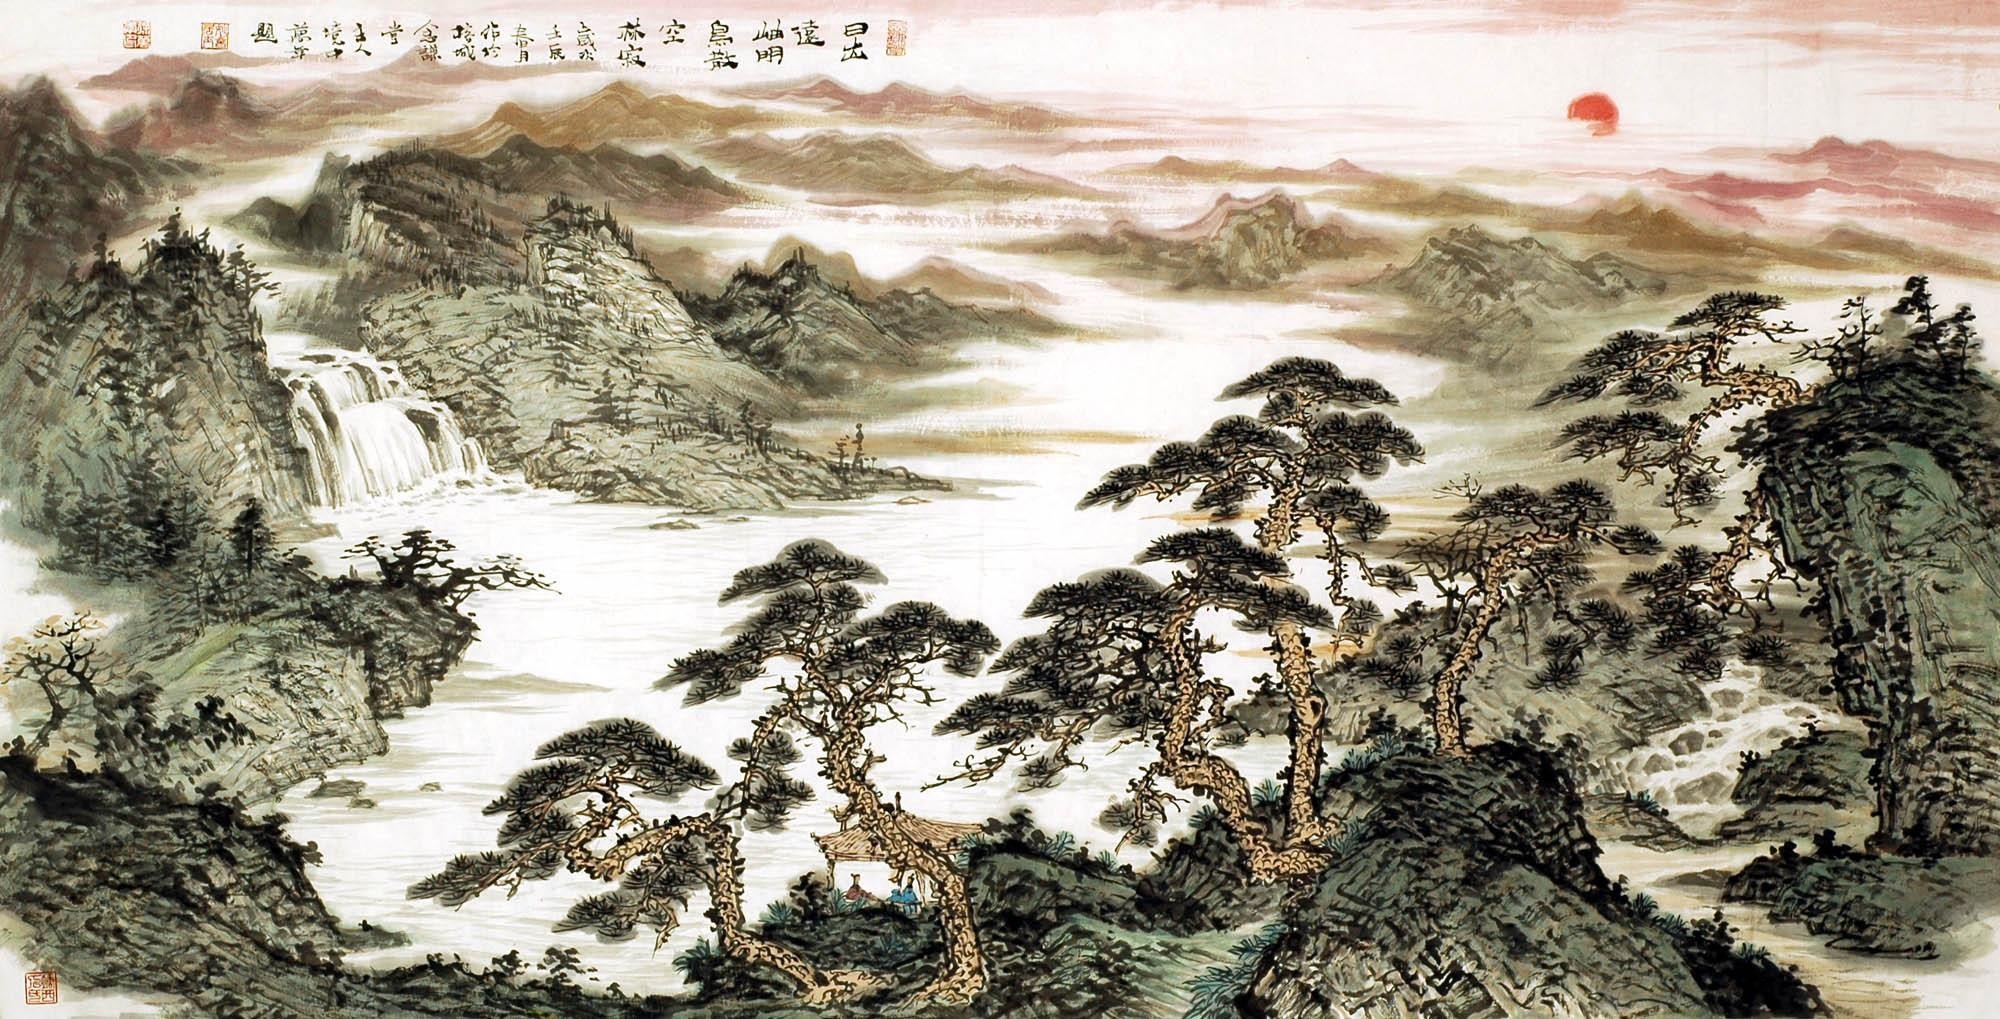 Chinese Landscape Painting - CNAG008086